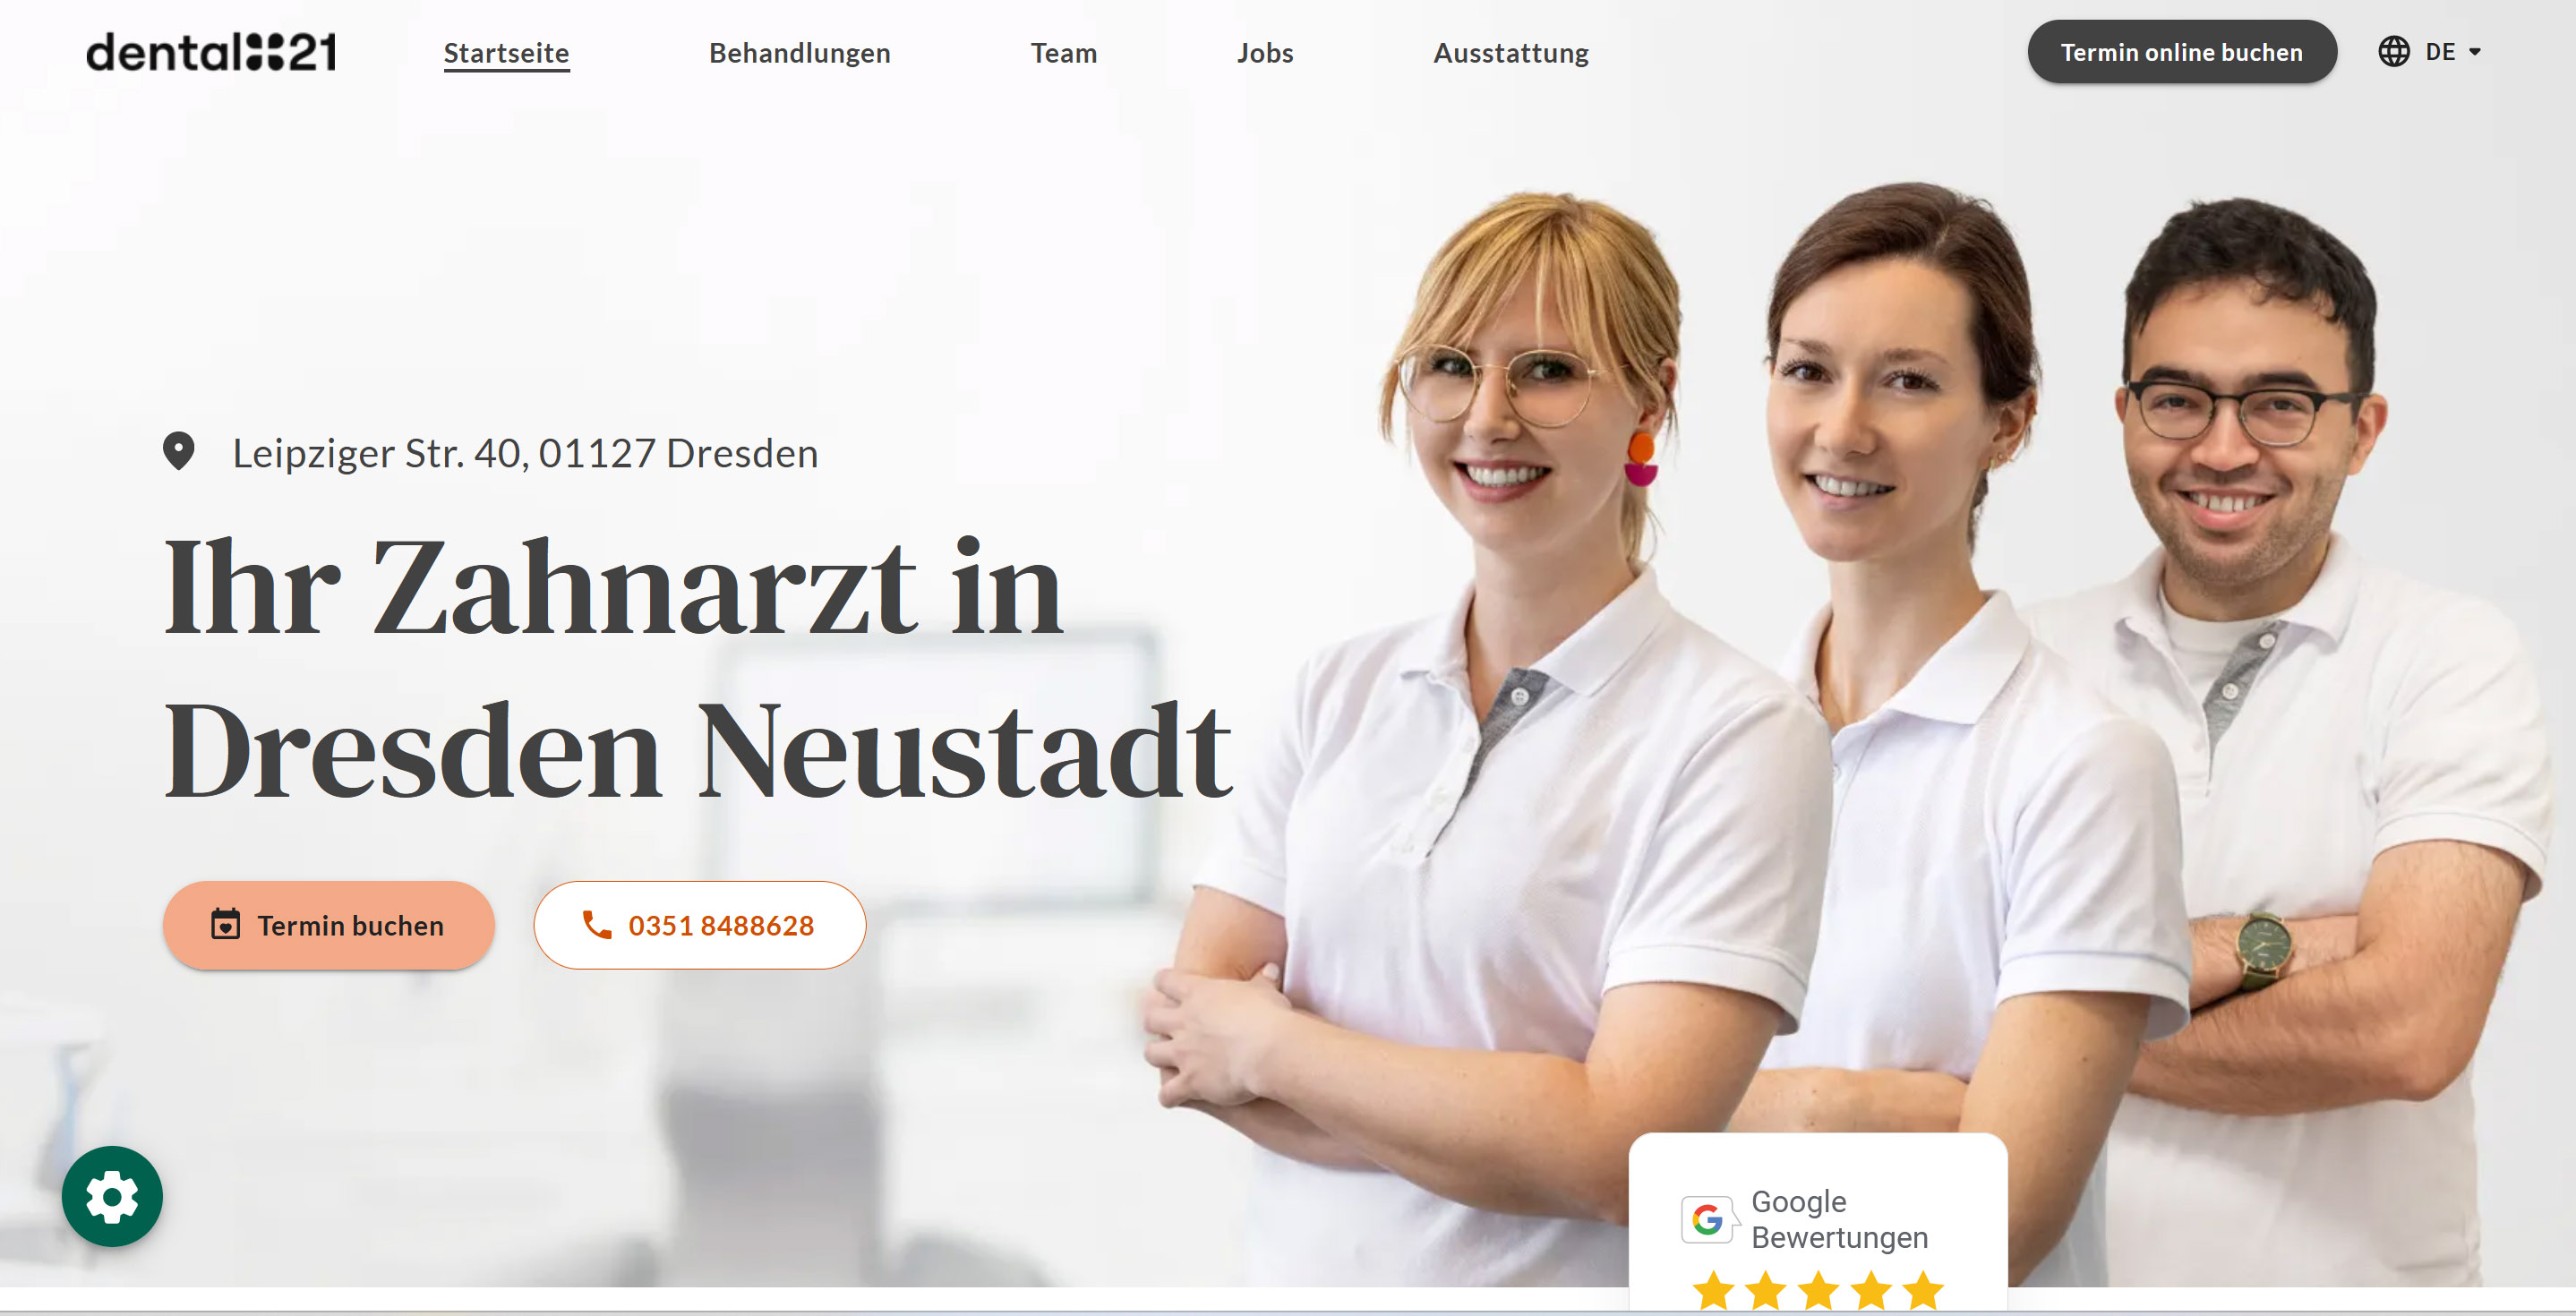 Dental21 Neustadt <br> Dr. Michael Rusetzki